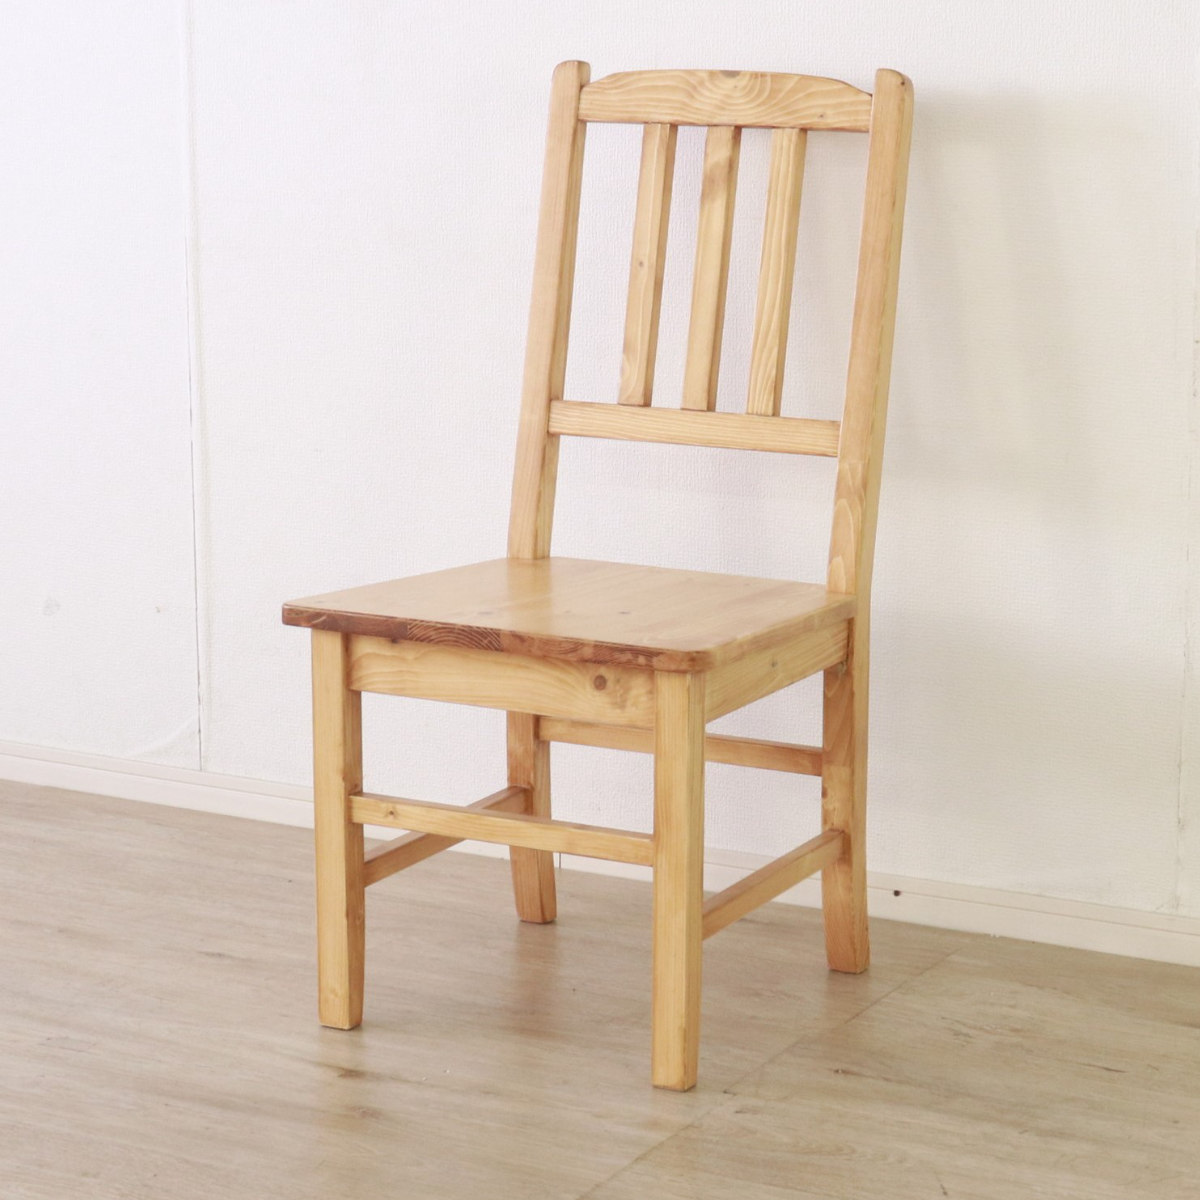 天然木 無垢 ダイニングチェア 木製 チェア 椅子 イス いす 北欧スタイル天然木